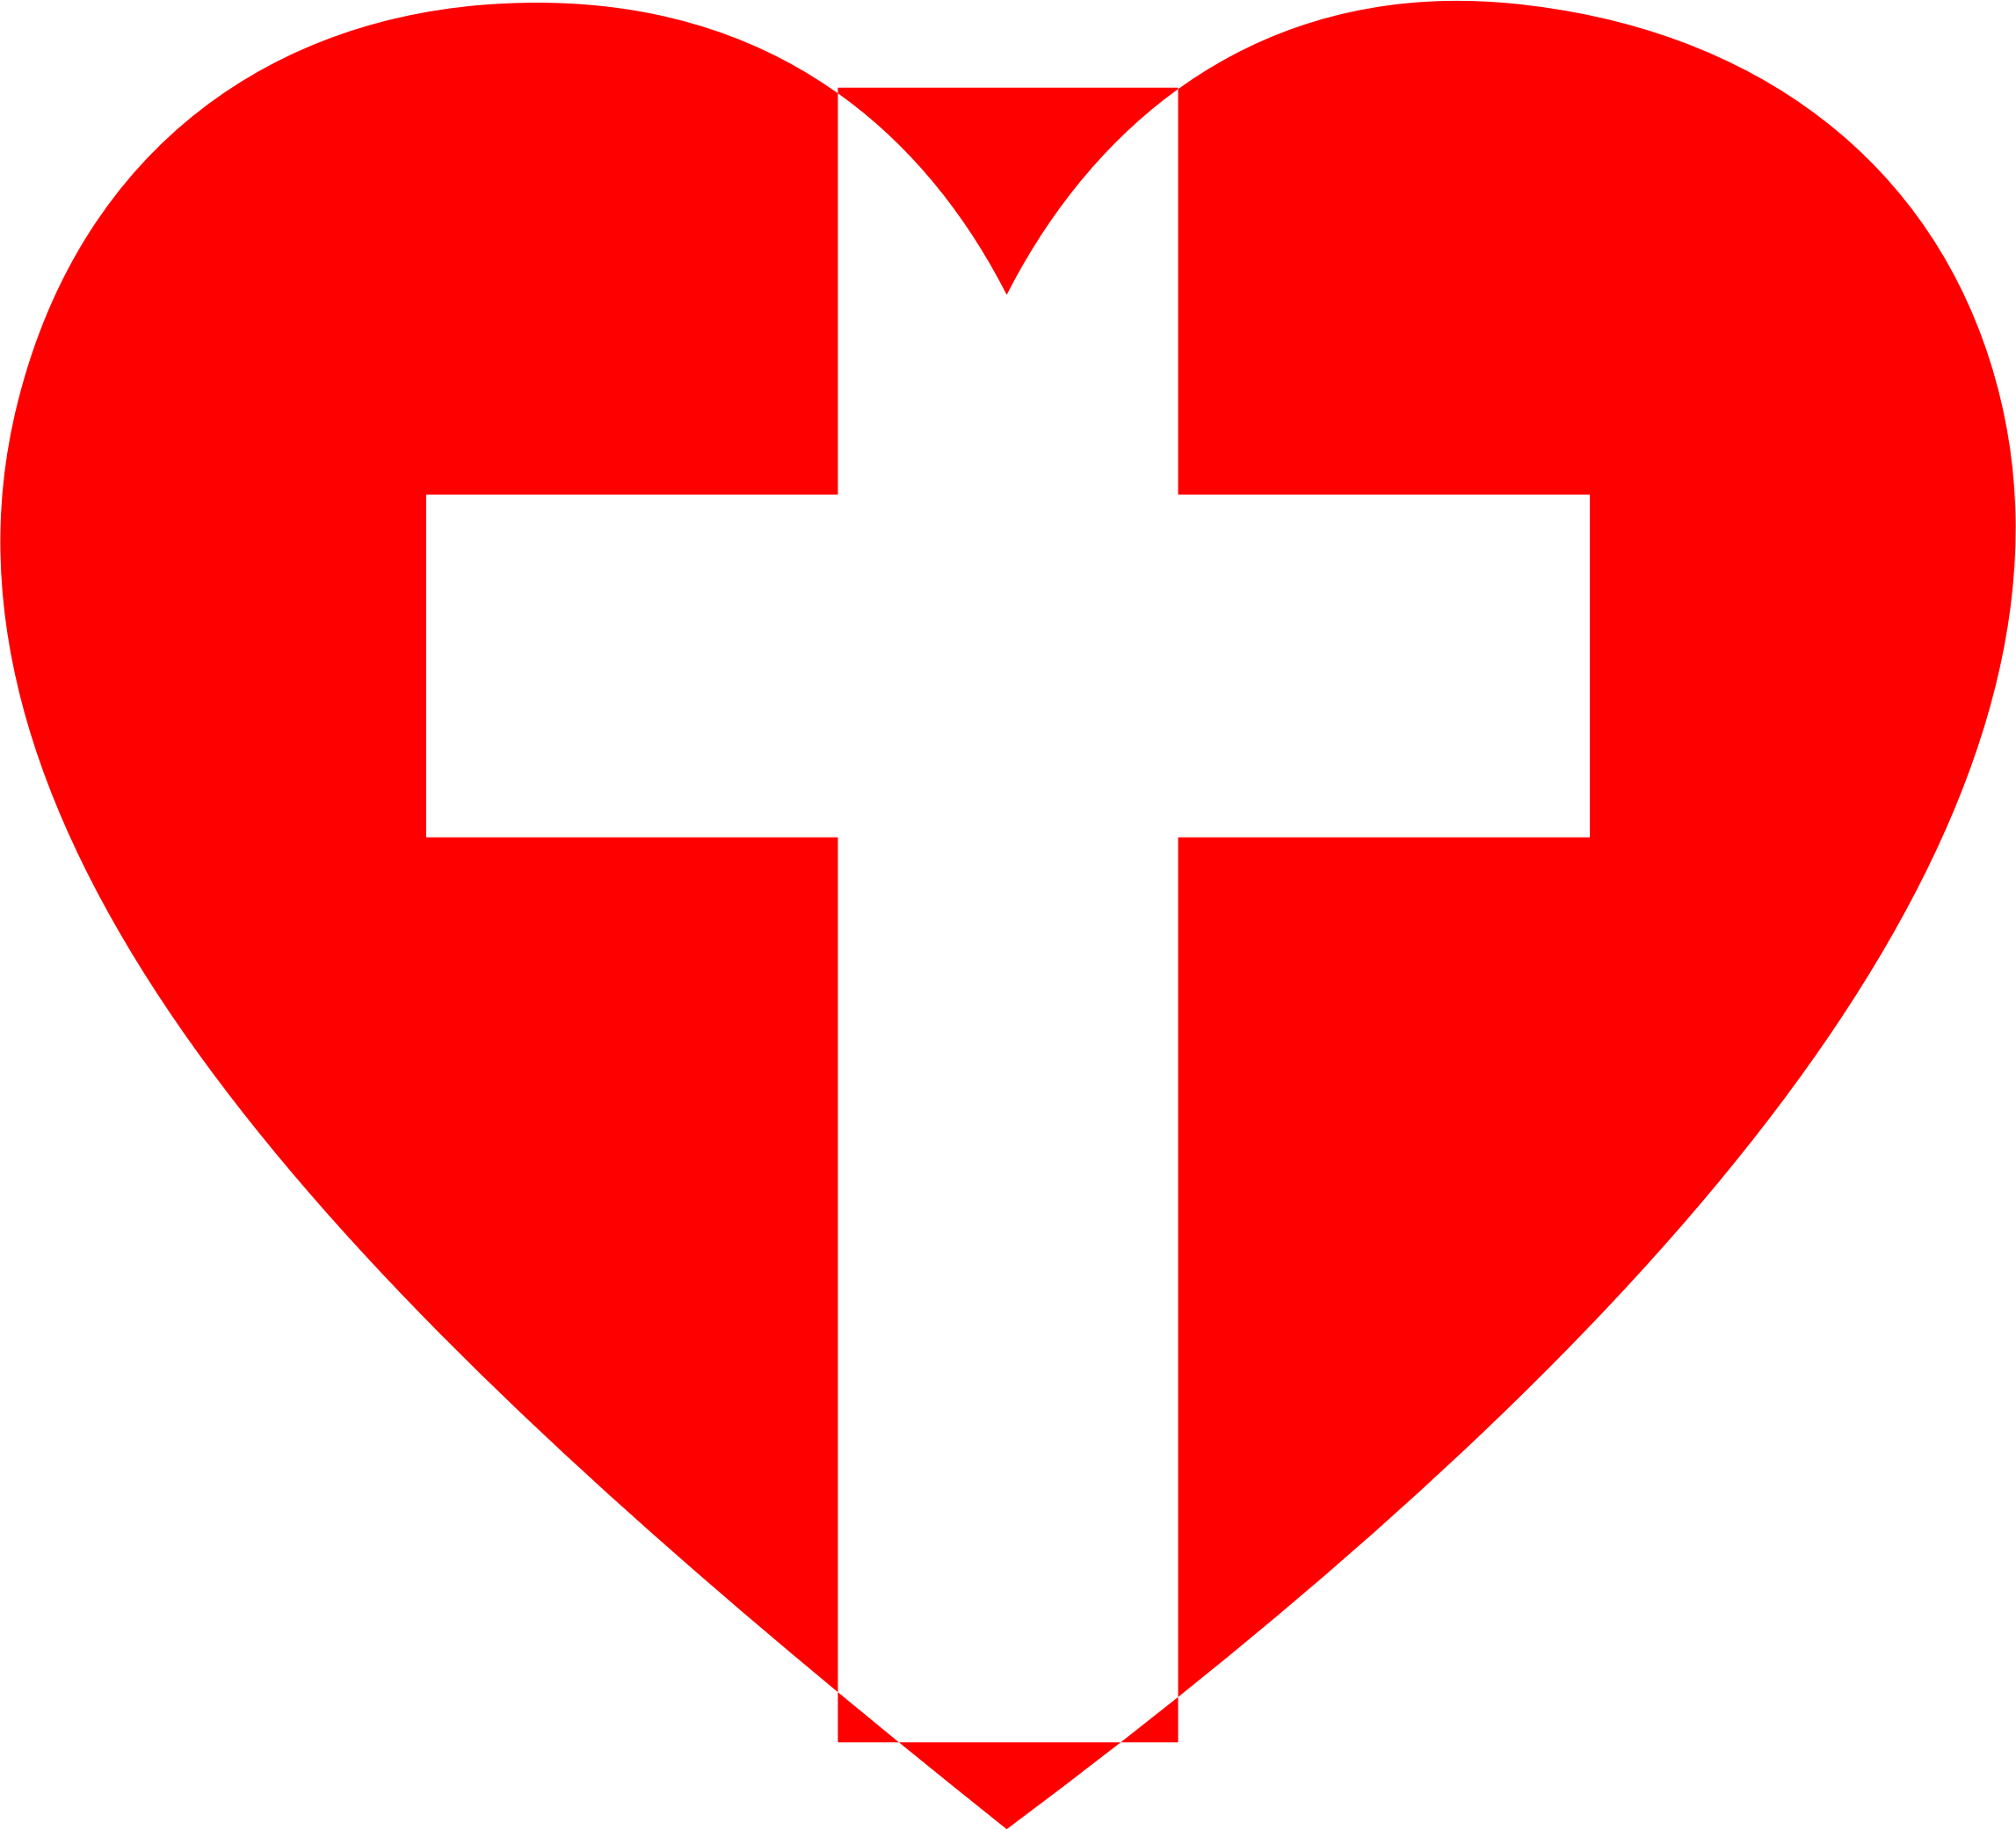 faith clipart heart